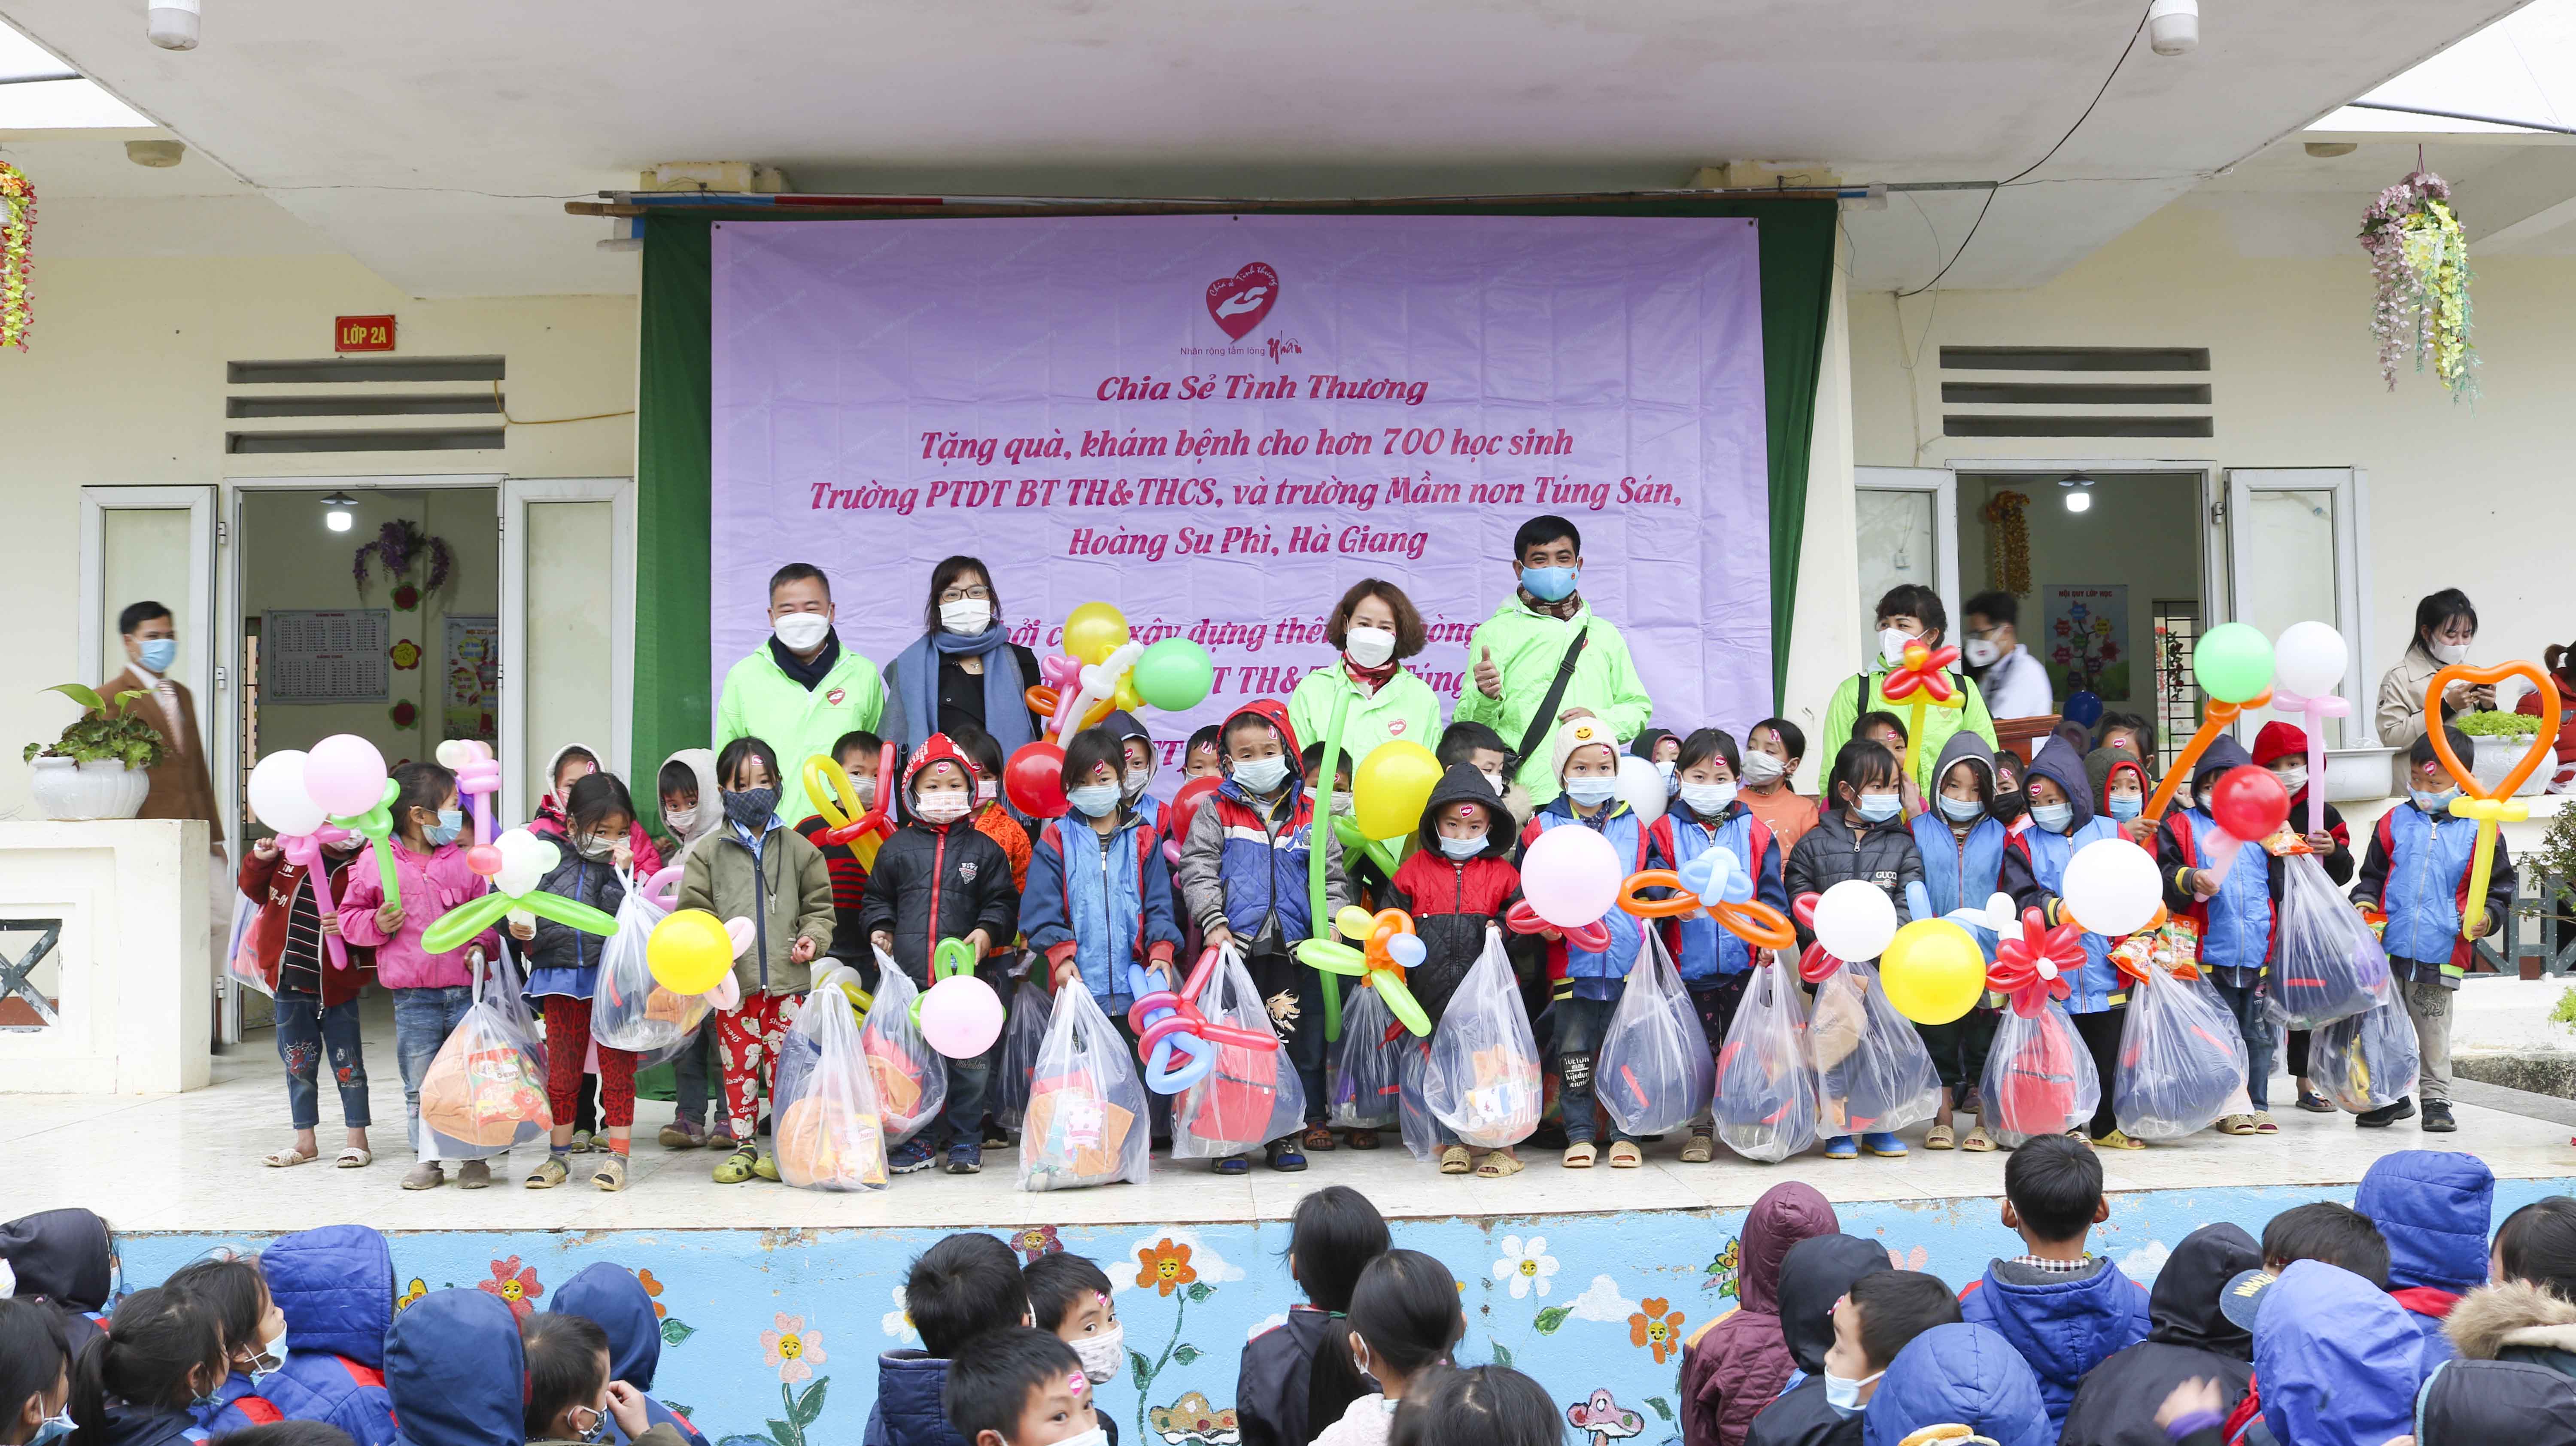 Giáo sư Nguyễn Lân Hiếu và nhóm Chia sẻ tình thương khám bệnh, tặng quà các trường học trên địa bàn xã Túng Sán